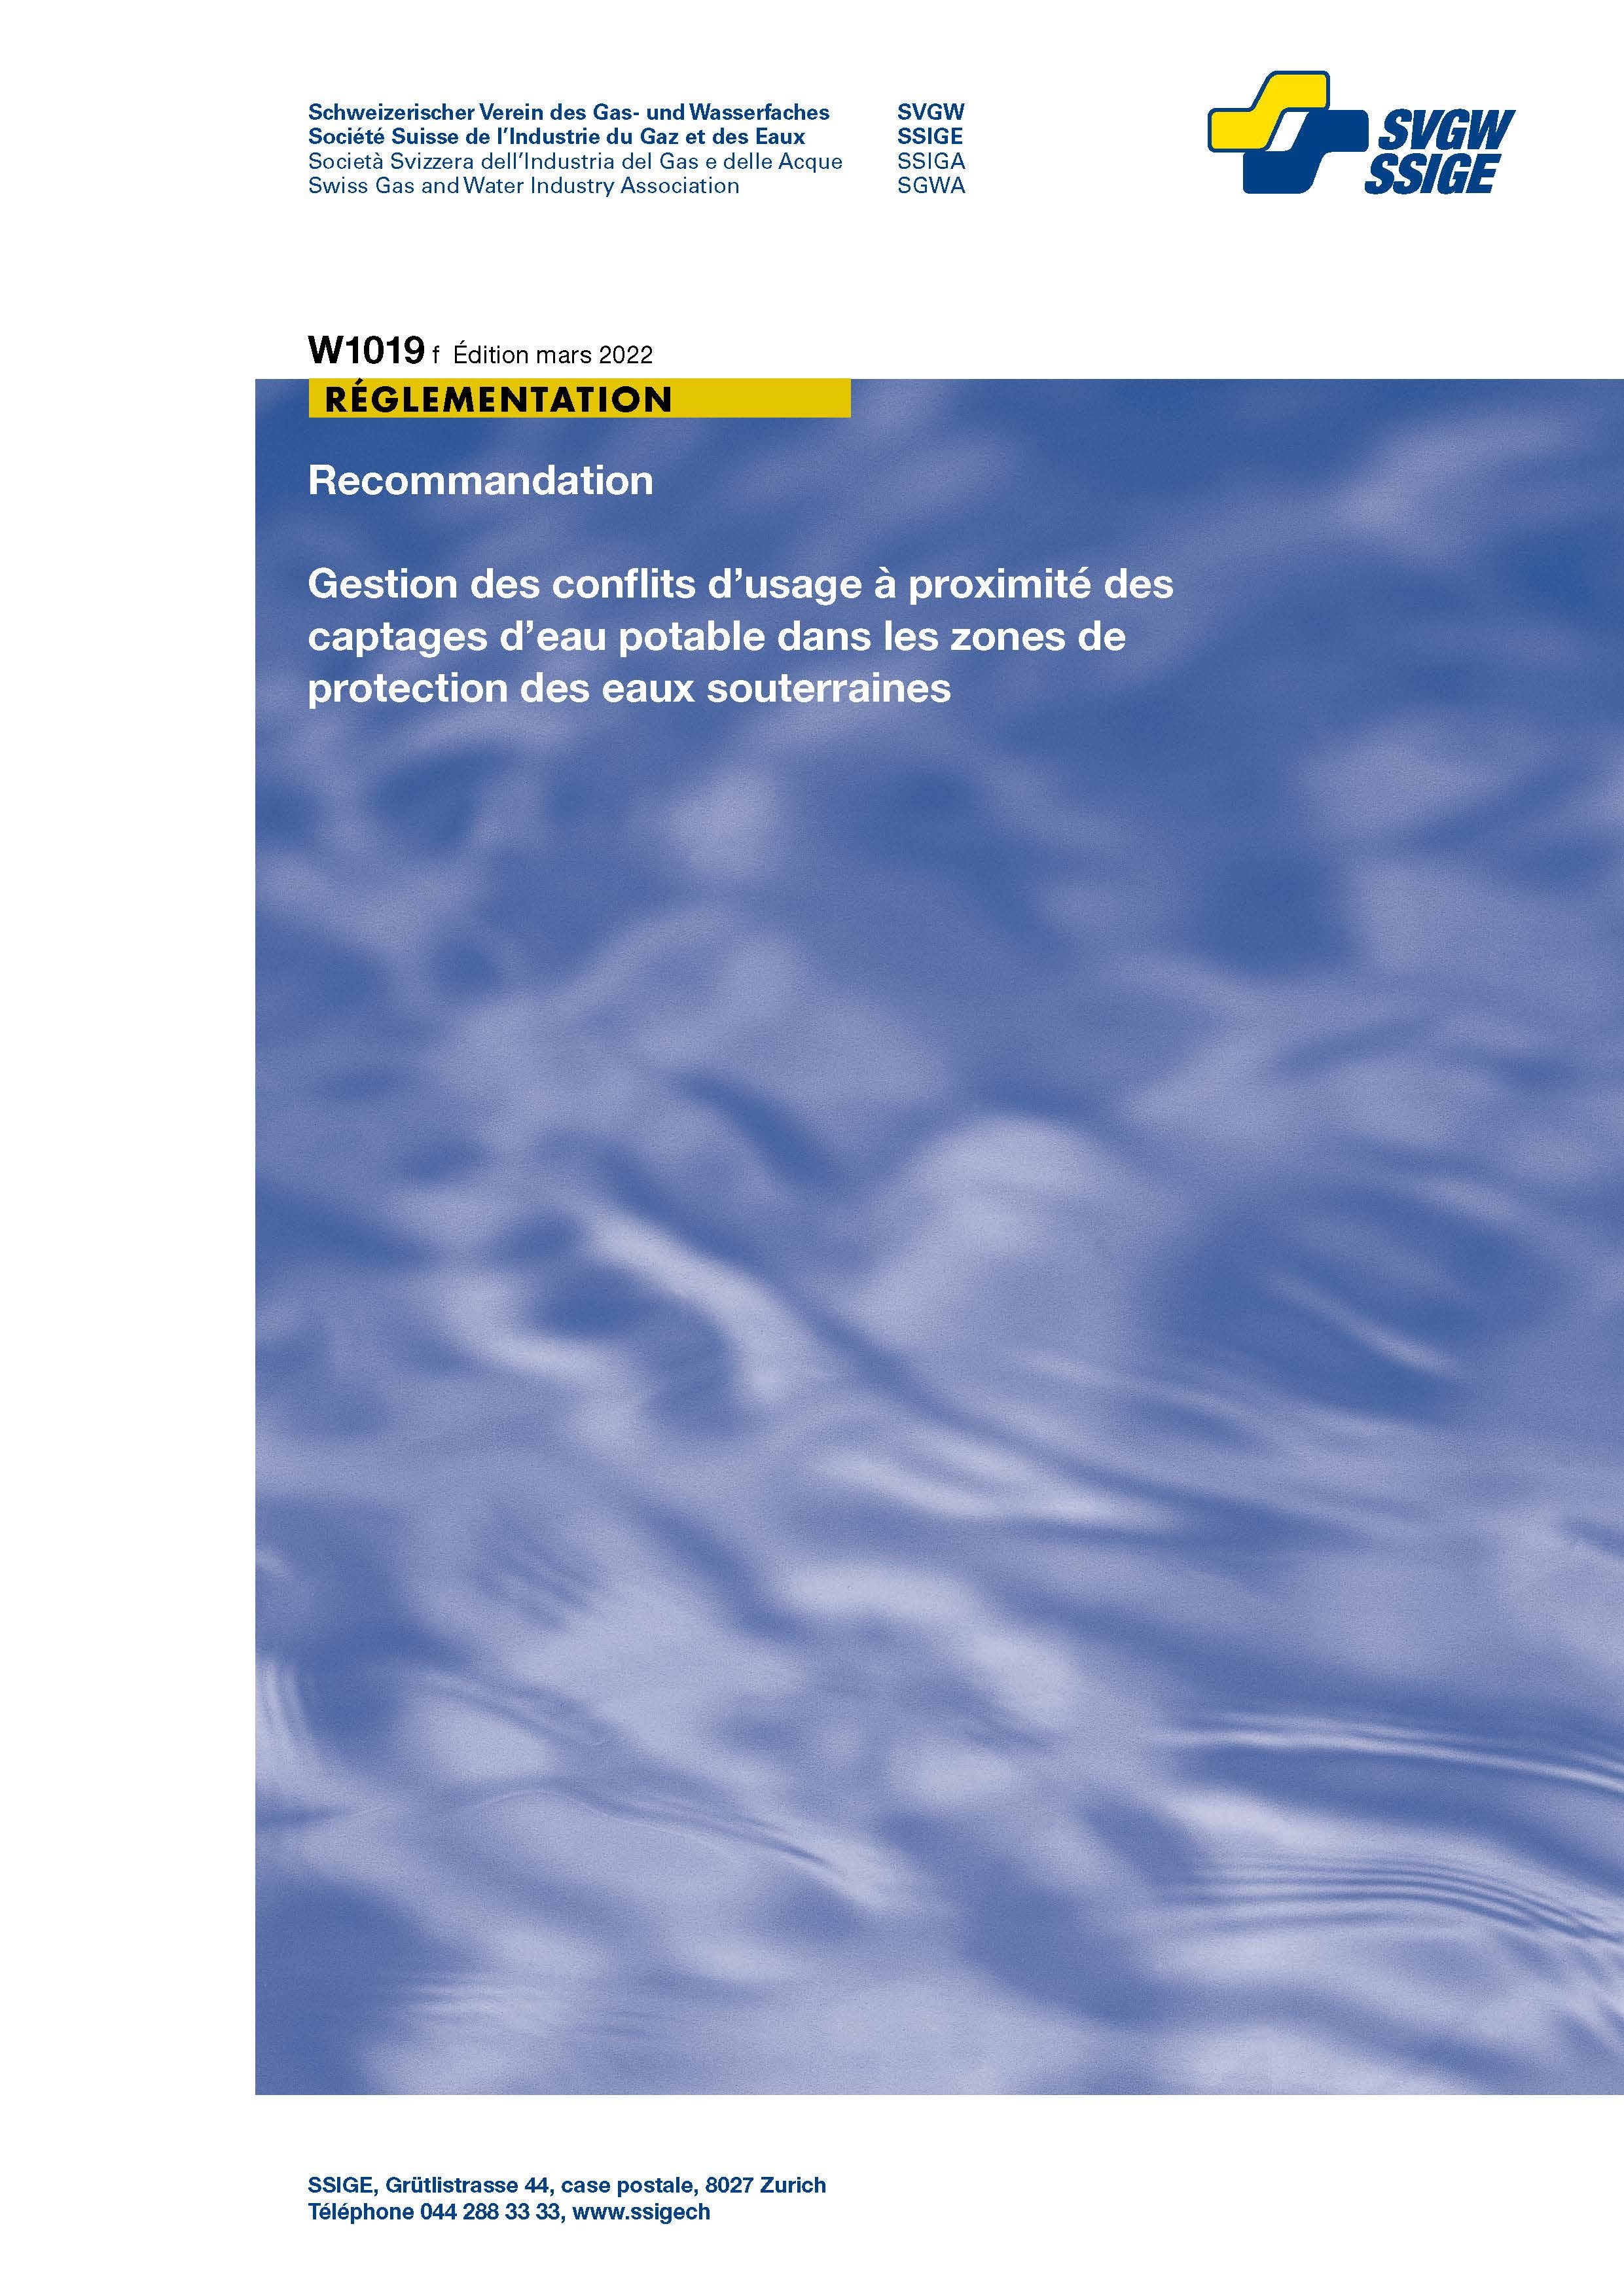 W1019 f Recommandation; Gestion des conflits d’usage à proximité des captages d’eau potable dans les zones de protection des eaux souterraines